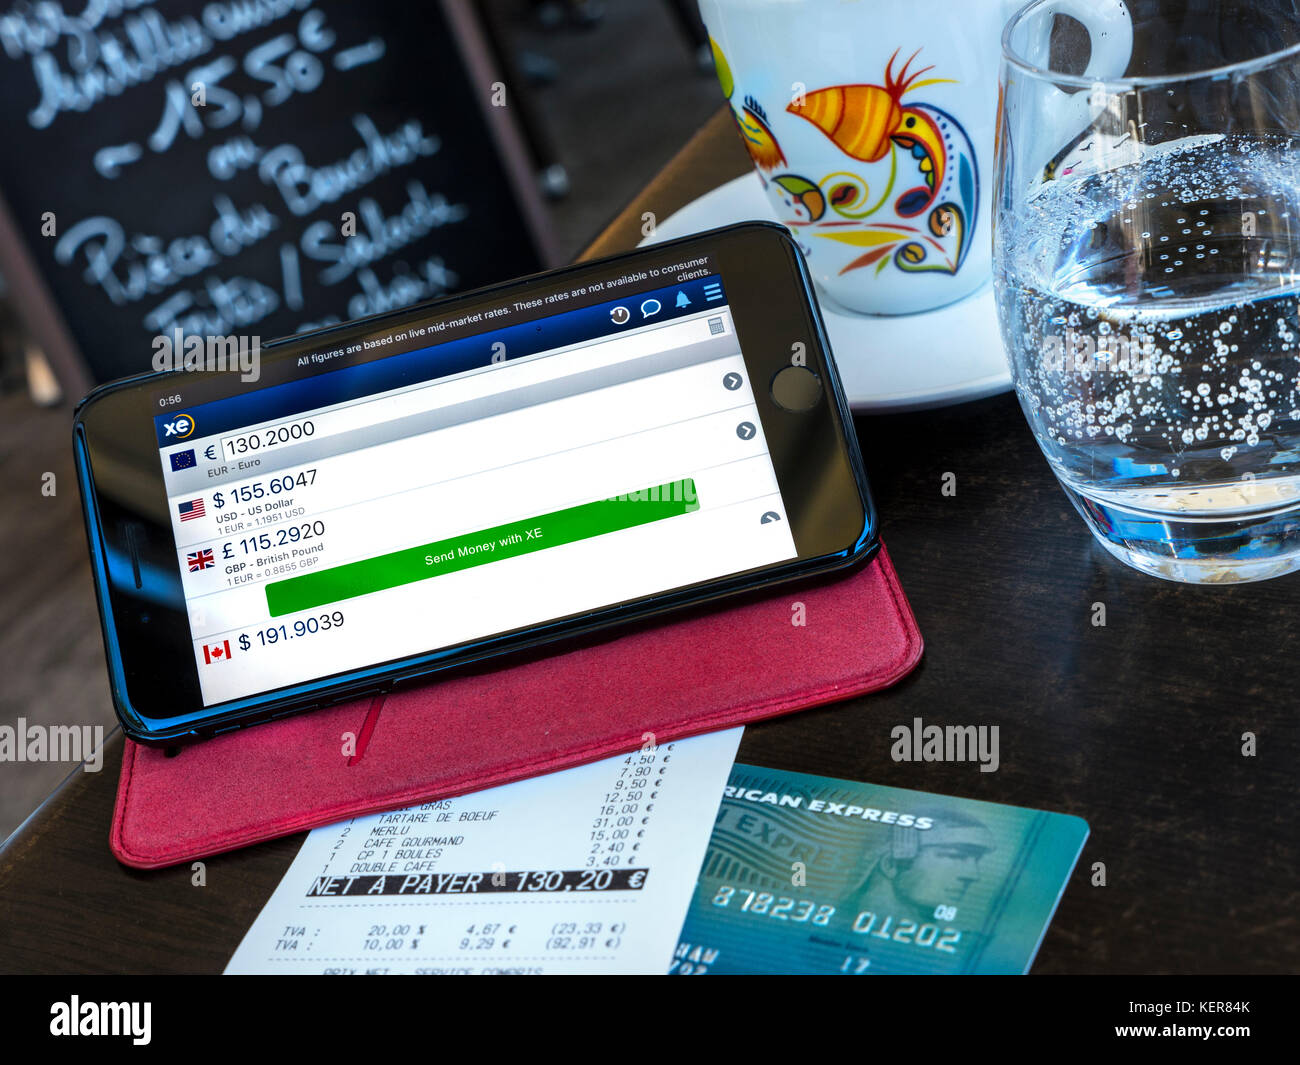 Moneta di Scambio app sulla schermata di iPhone nel ristorante francese di pagamento di bollette situazione all'estero, la carta Amex & euro bill sul tavolo. (Carta alterata in modo sicuro) Foto Stock